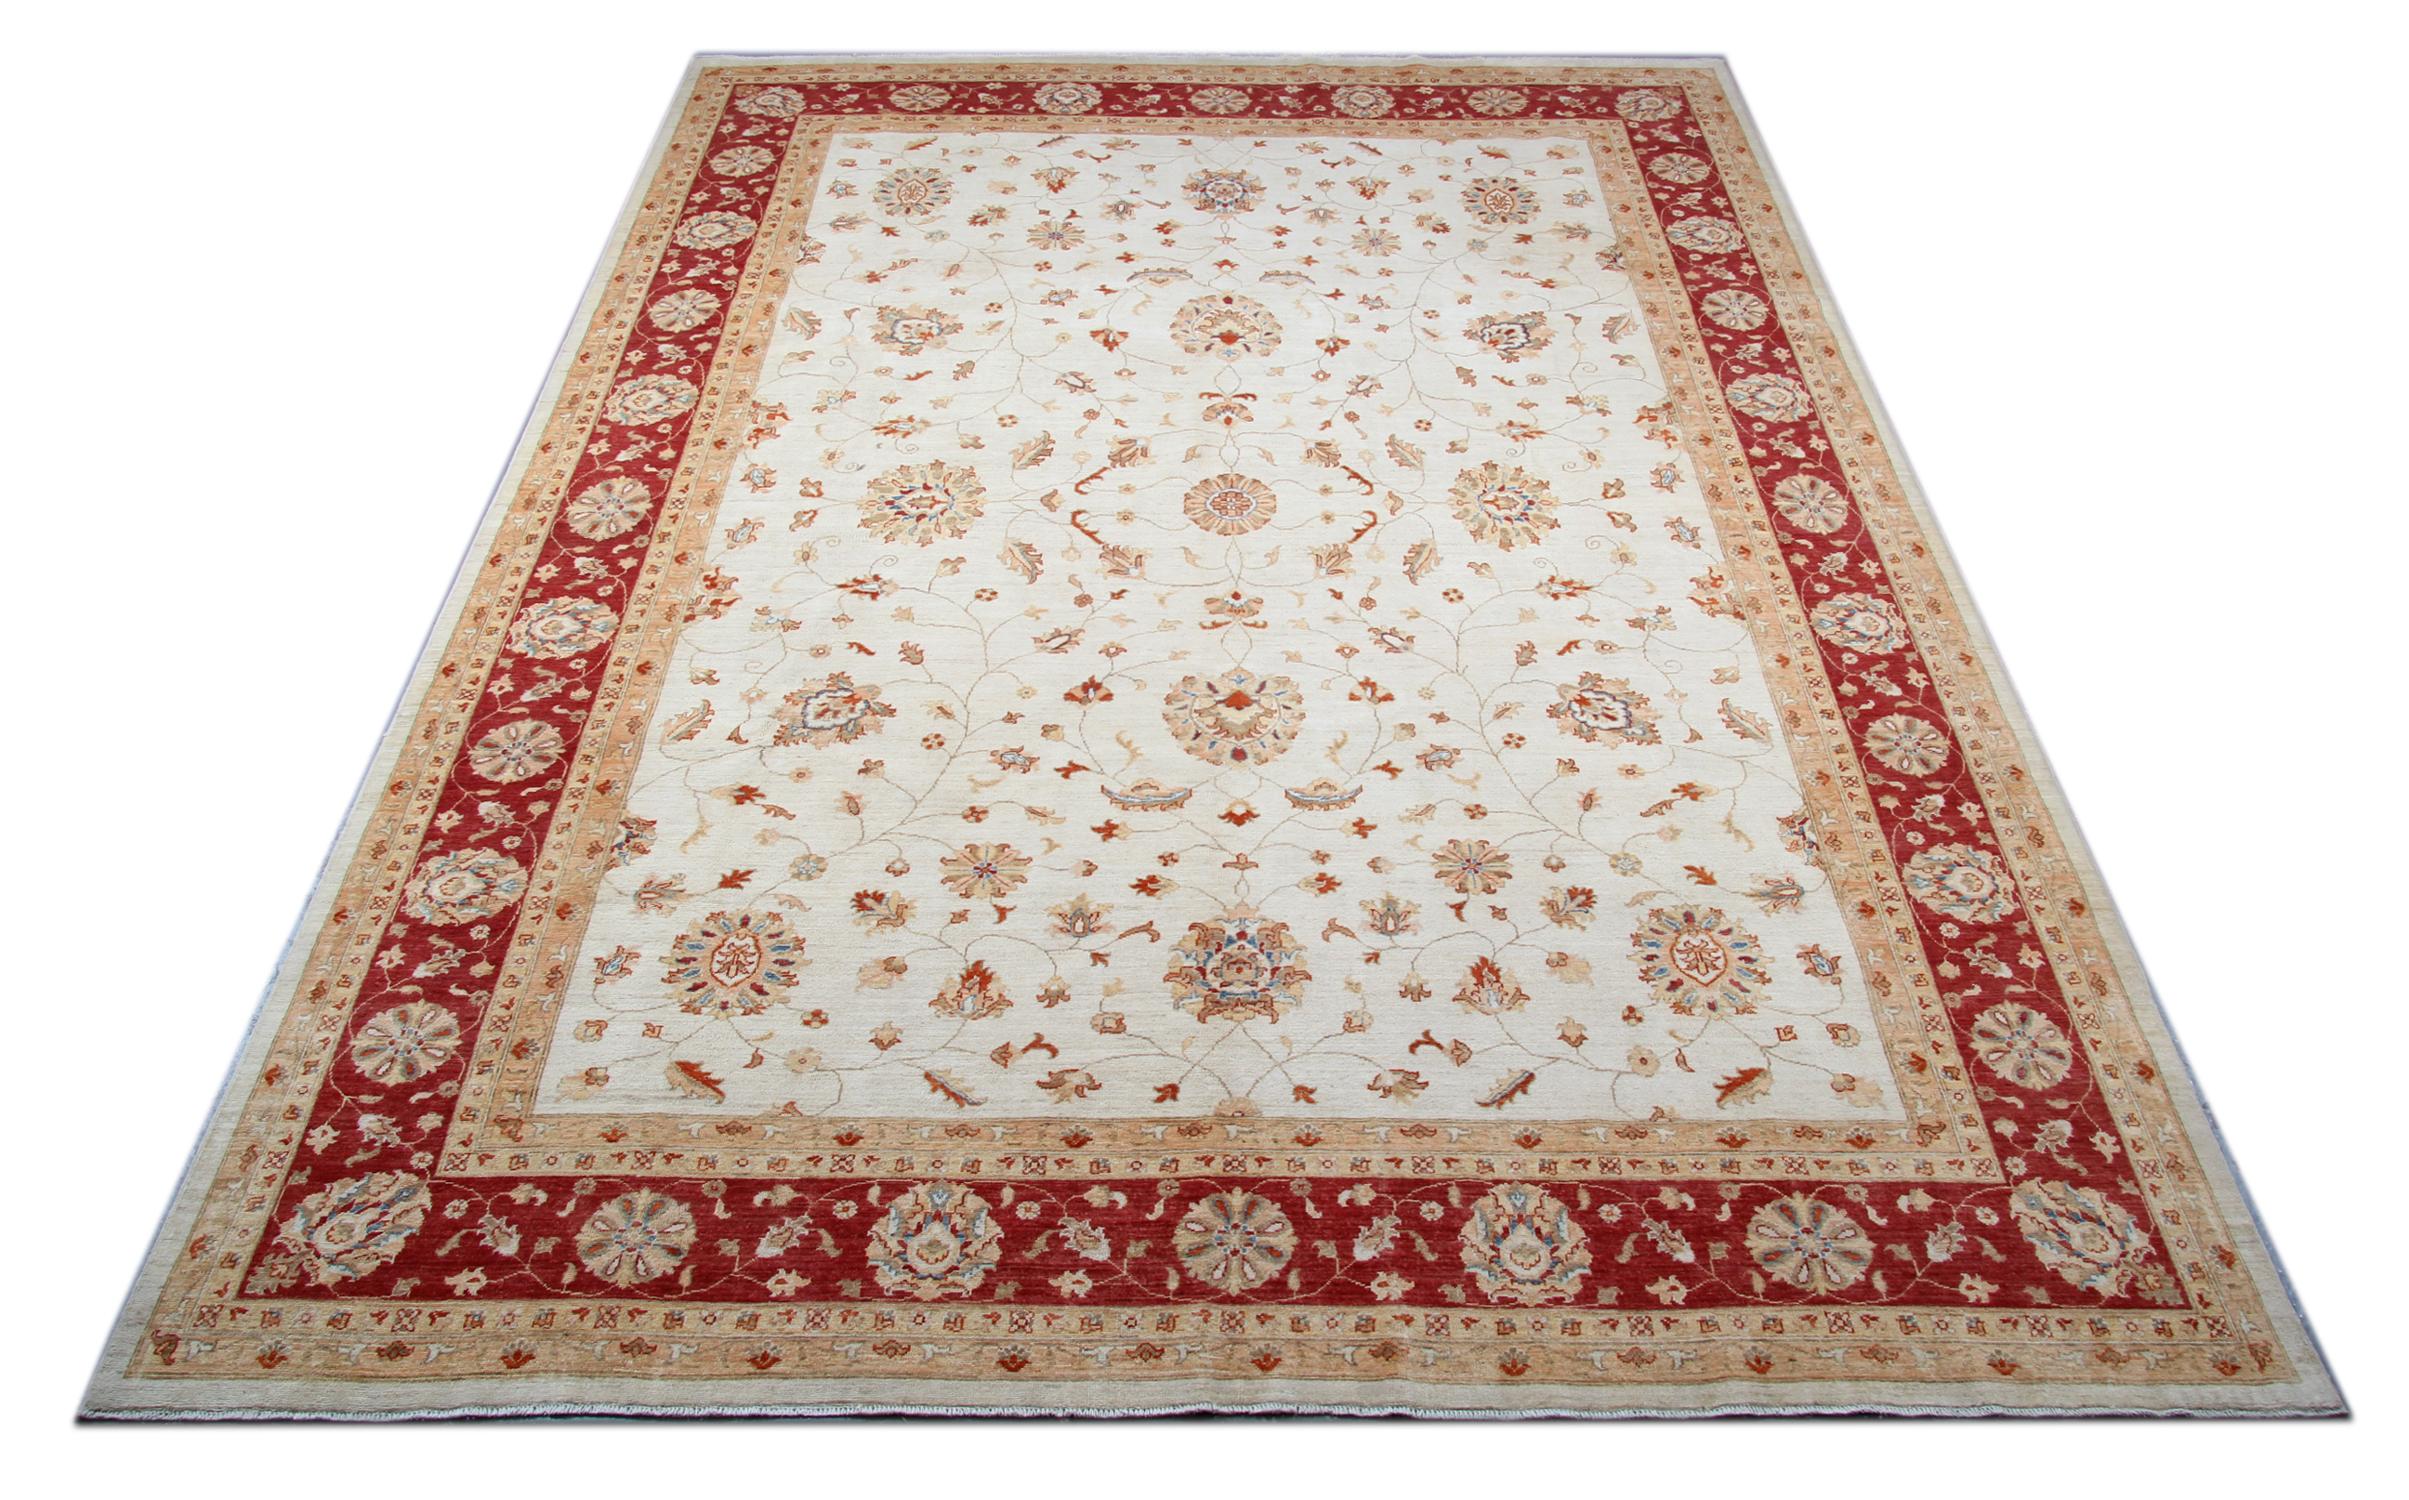 Dieser Teppich ist ein Ziegler Sultanabad-Teppich, der auf unseren Webstühlen von unseren Meisterwebern in Afghanistan hergestellt wurde. Mit einem creme- und beigefarbenen Blumenmuster auf elfenbeinfarbenem Hintergrund und einer kräftigen roten